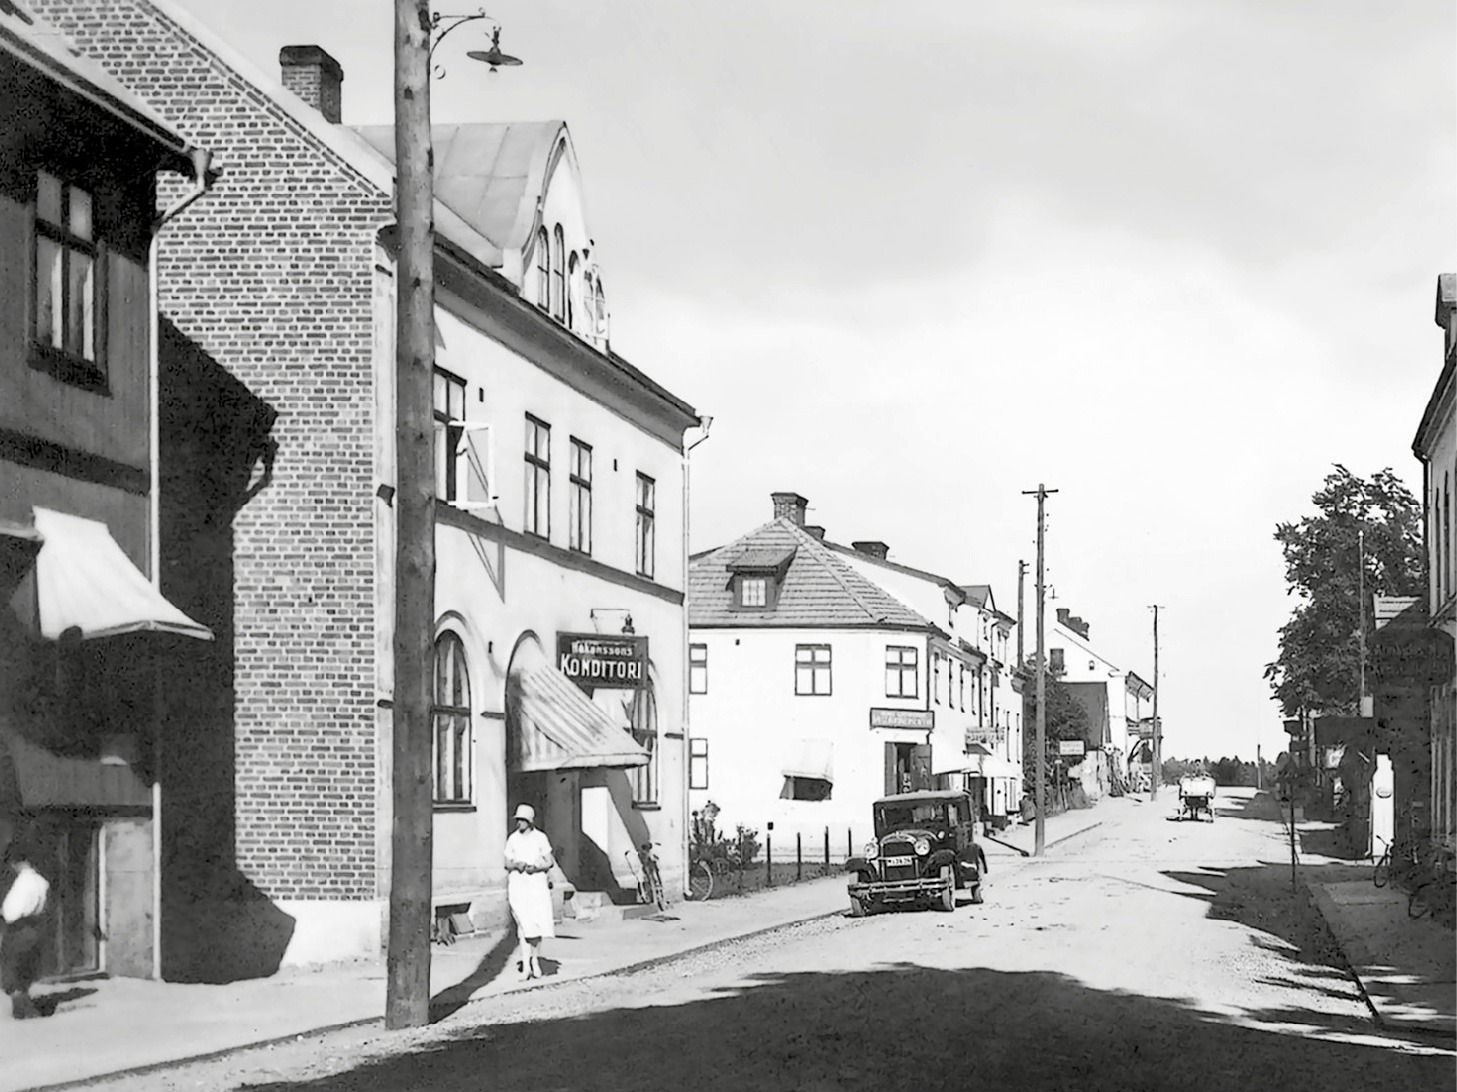 Calle tranquila de Suecia, años 30, mujer vestida de blanco en la acera, coche aparcado, un coche se aproxima por la calle.